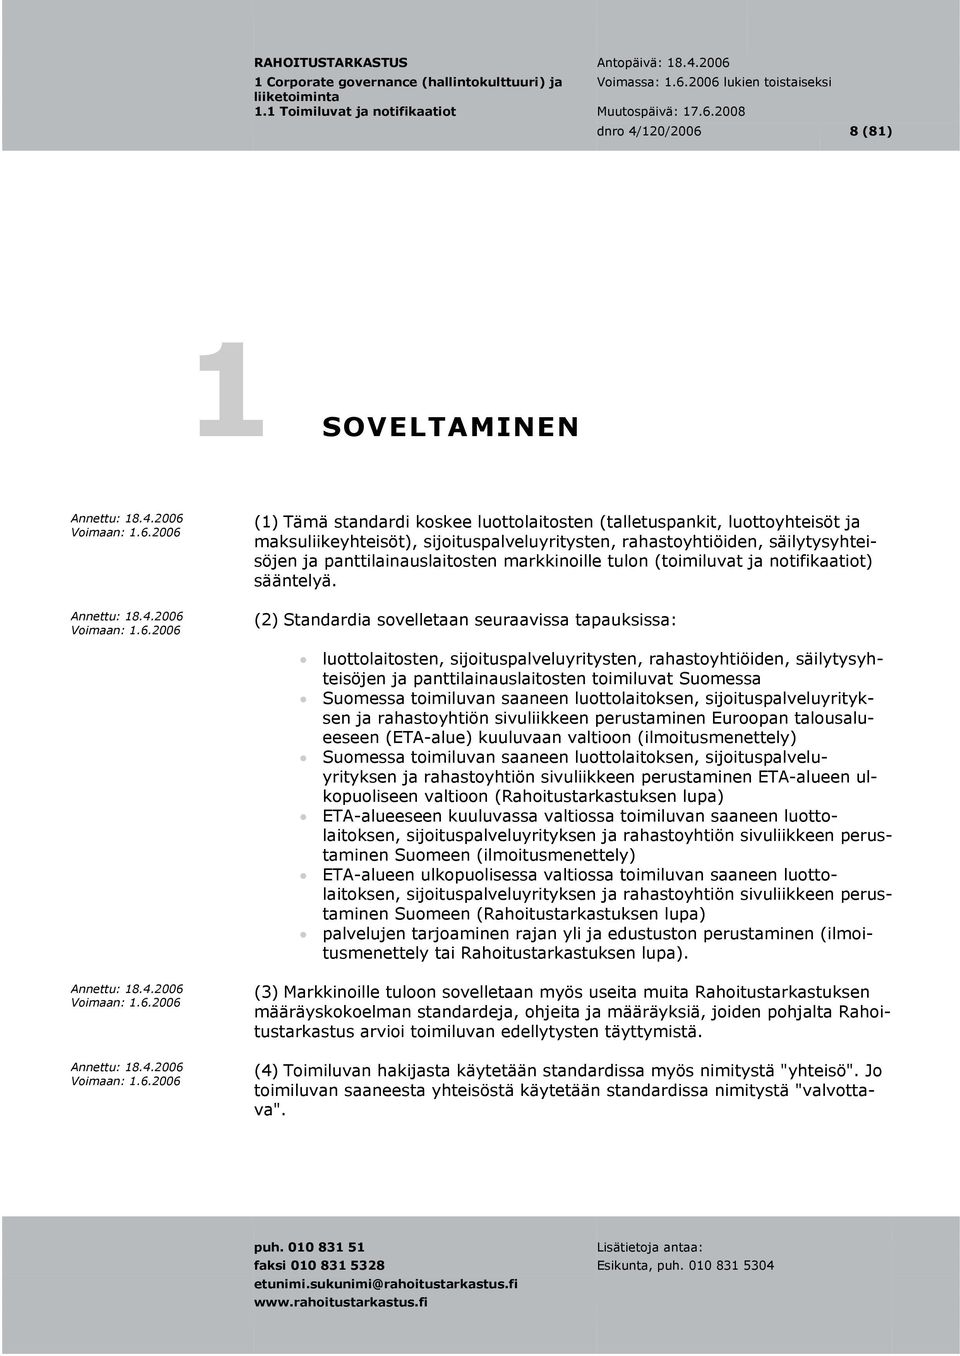 (2) Standardia sovelletaan seuraavissa tapauksissa: luottolaitosten, sijoituspalveluyritysten, rahastoyhtiöiden, säilytysyhteisöjen ja panttilainauslaitosten toimiluvat Suomessa Suomessa toimiluvan